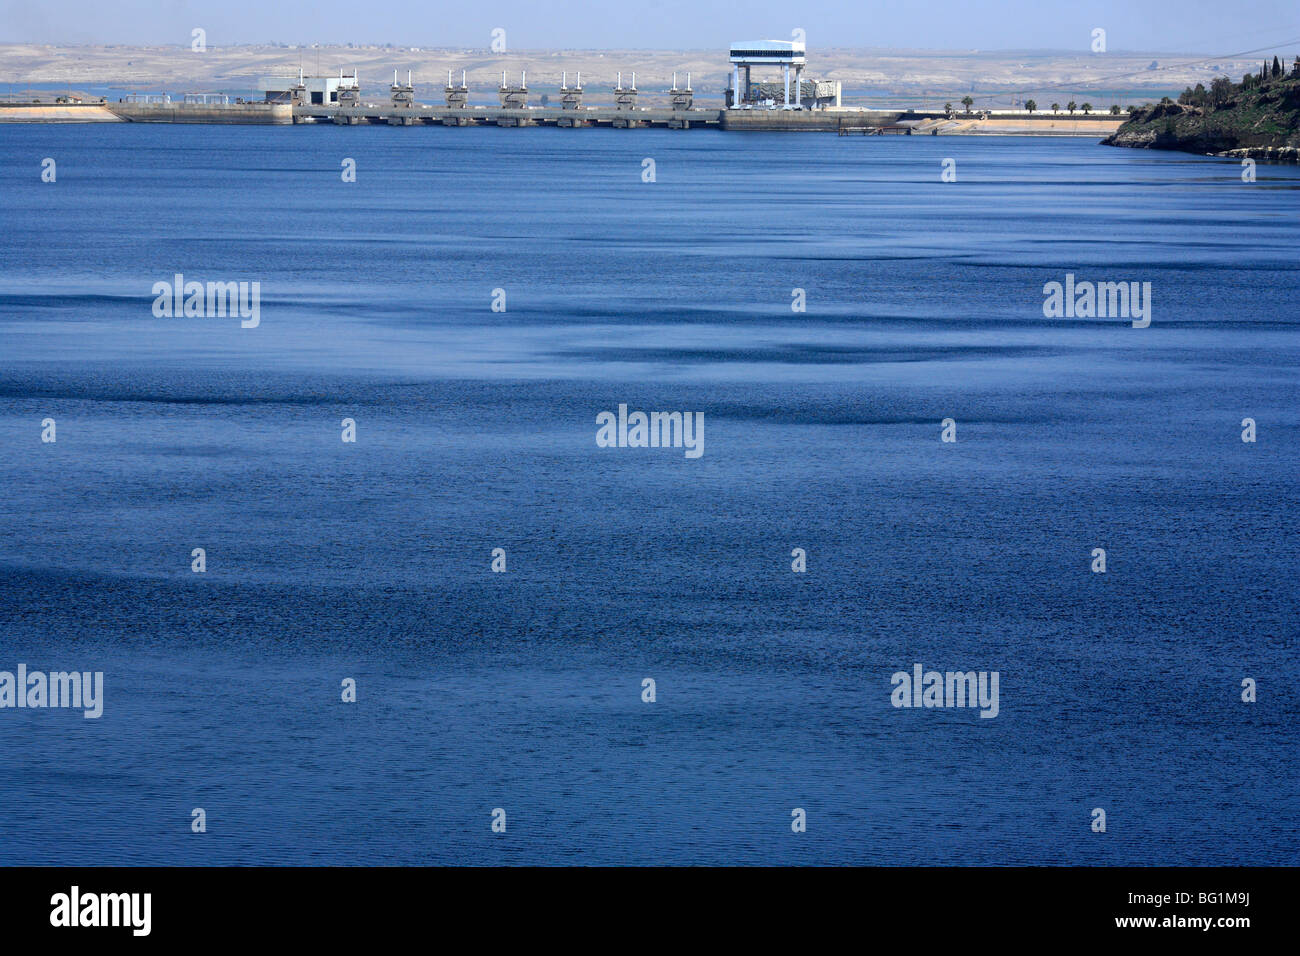 Euphrates river, Syria Stock Photo